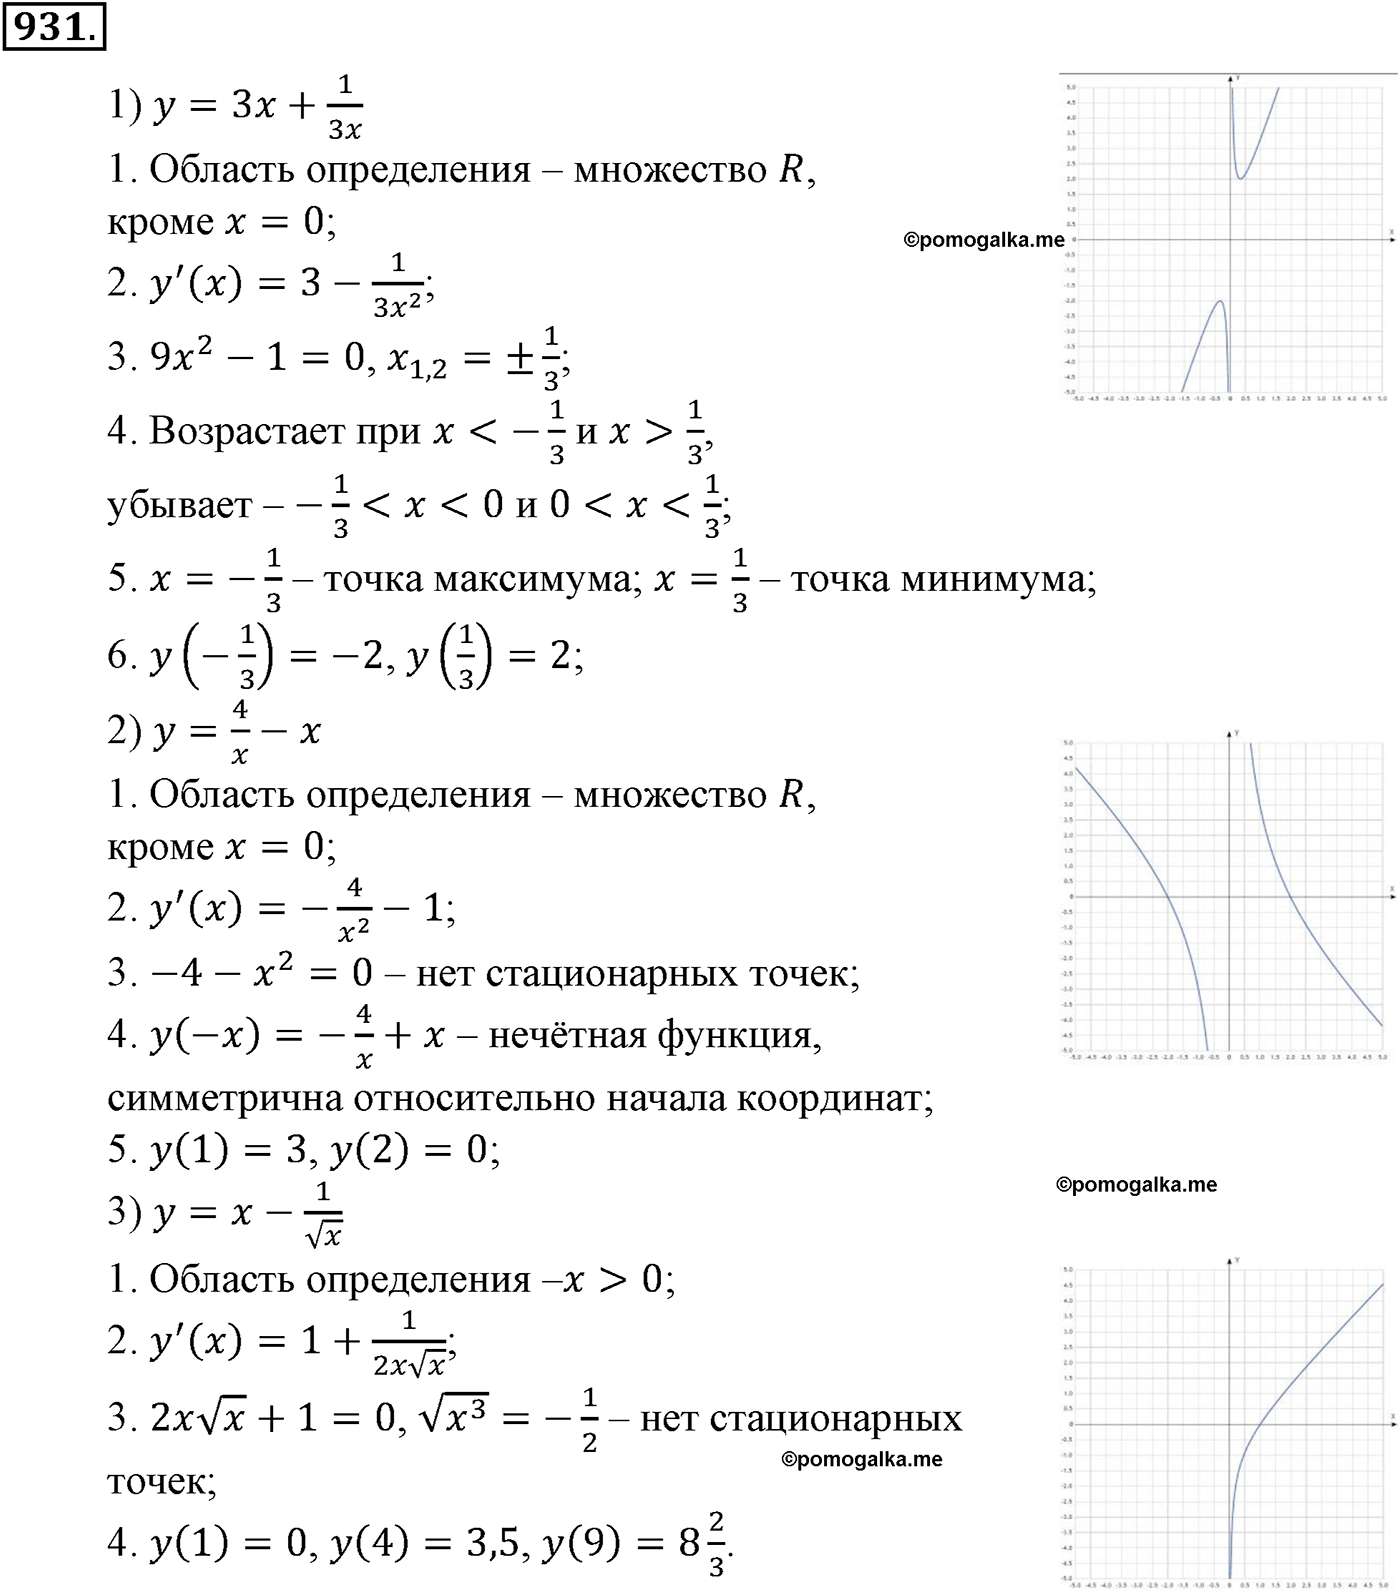 разбор задачи №931 по алгебре за 10-11 класс из учебника Алимова, Колягина